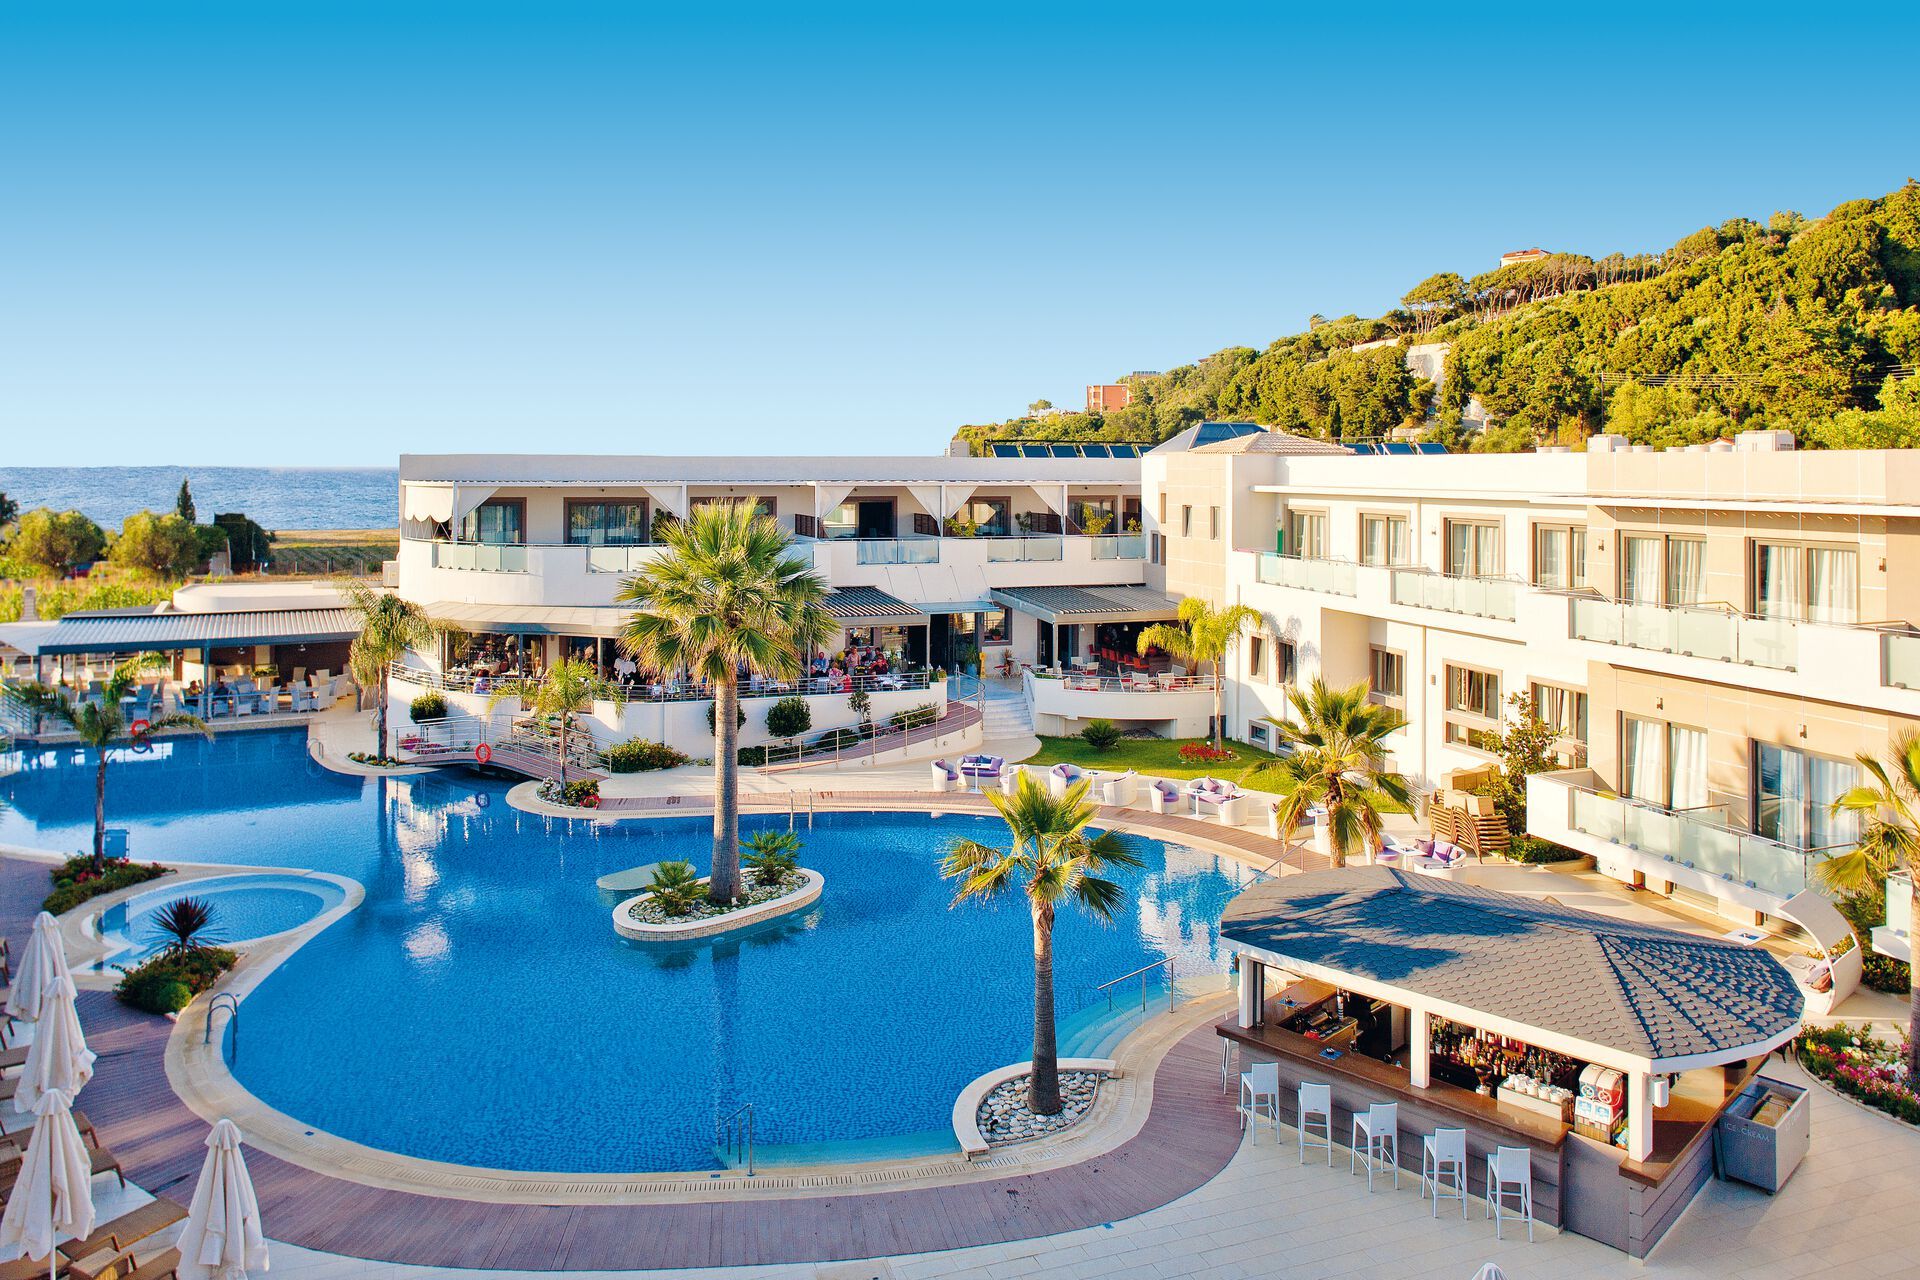 Grèce - Iles grecques - Zante - Lesante Classic Luxury Hotel & Spa 5*